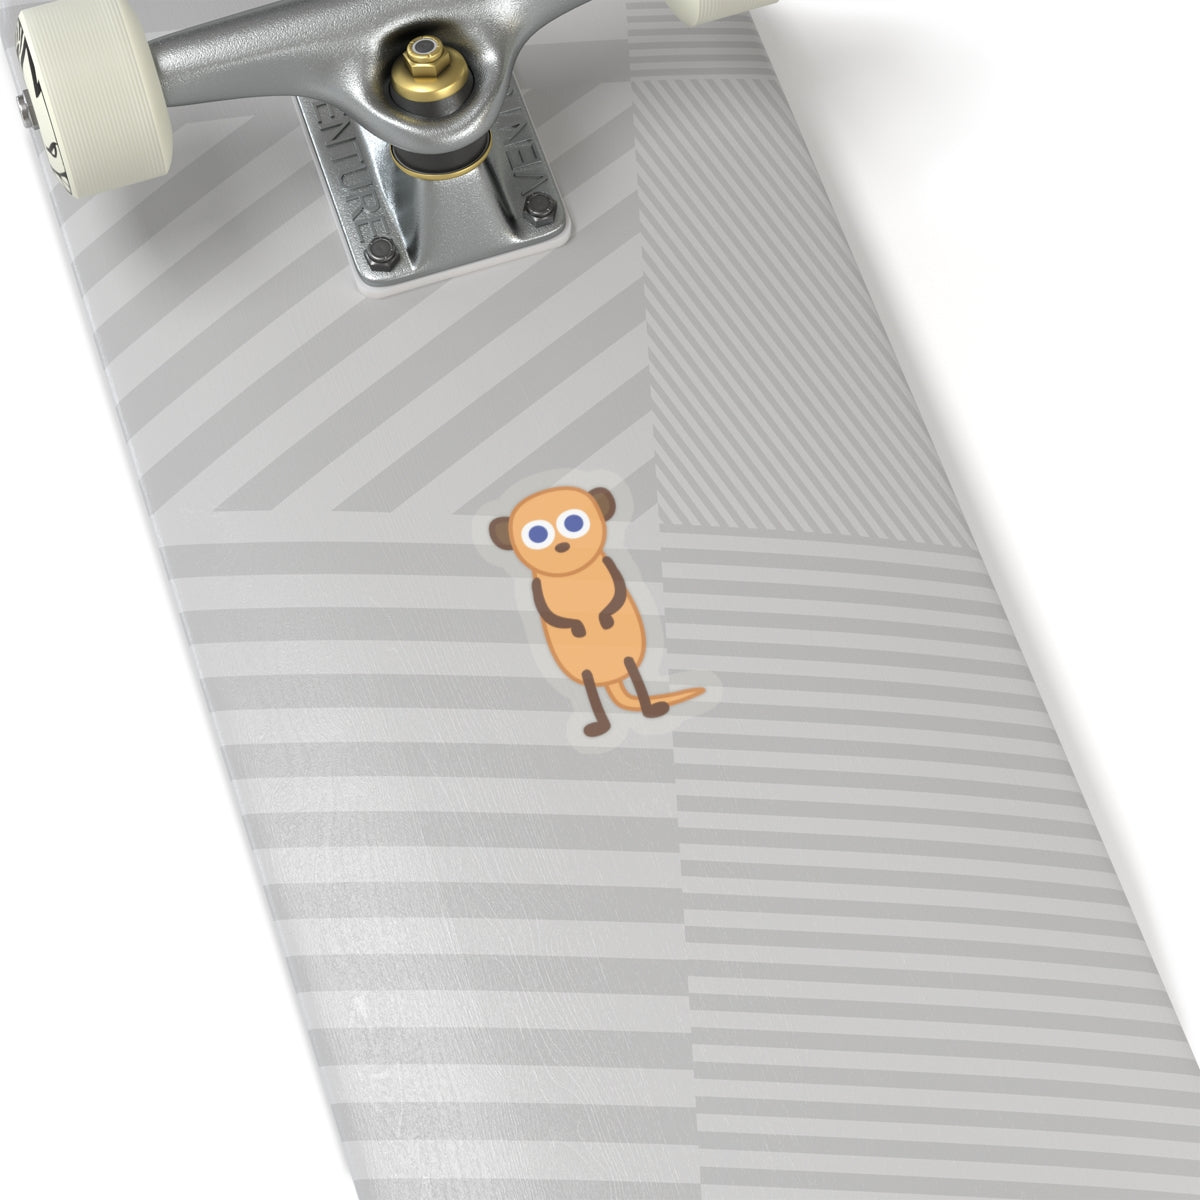 A Meerkat sticker